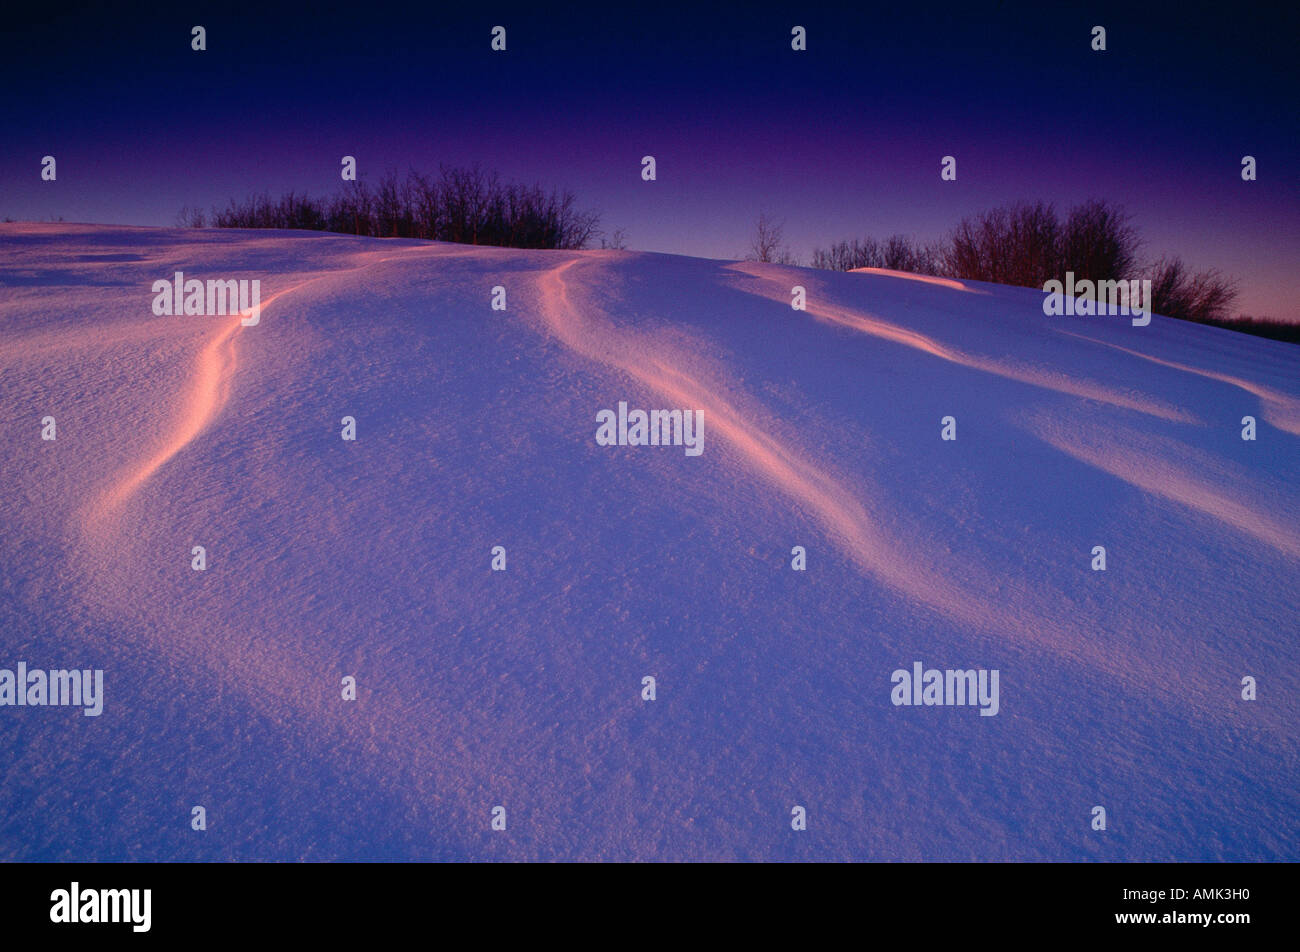 Snowdrift, near Edmonton, Alberta, Canada Stock Photo